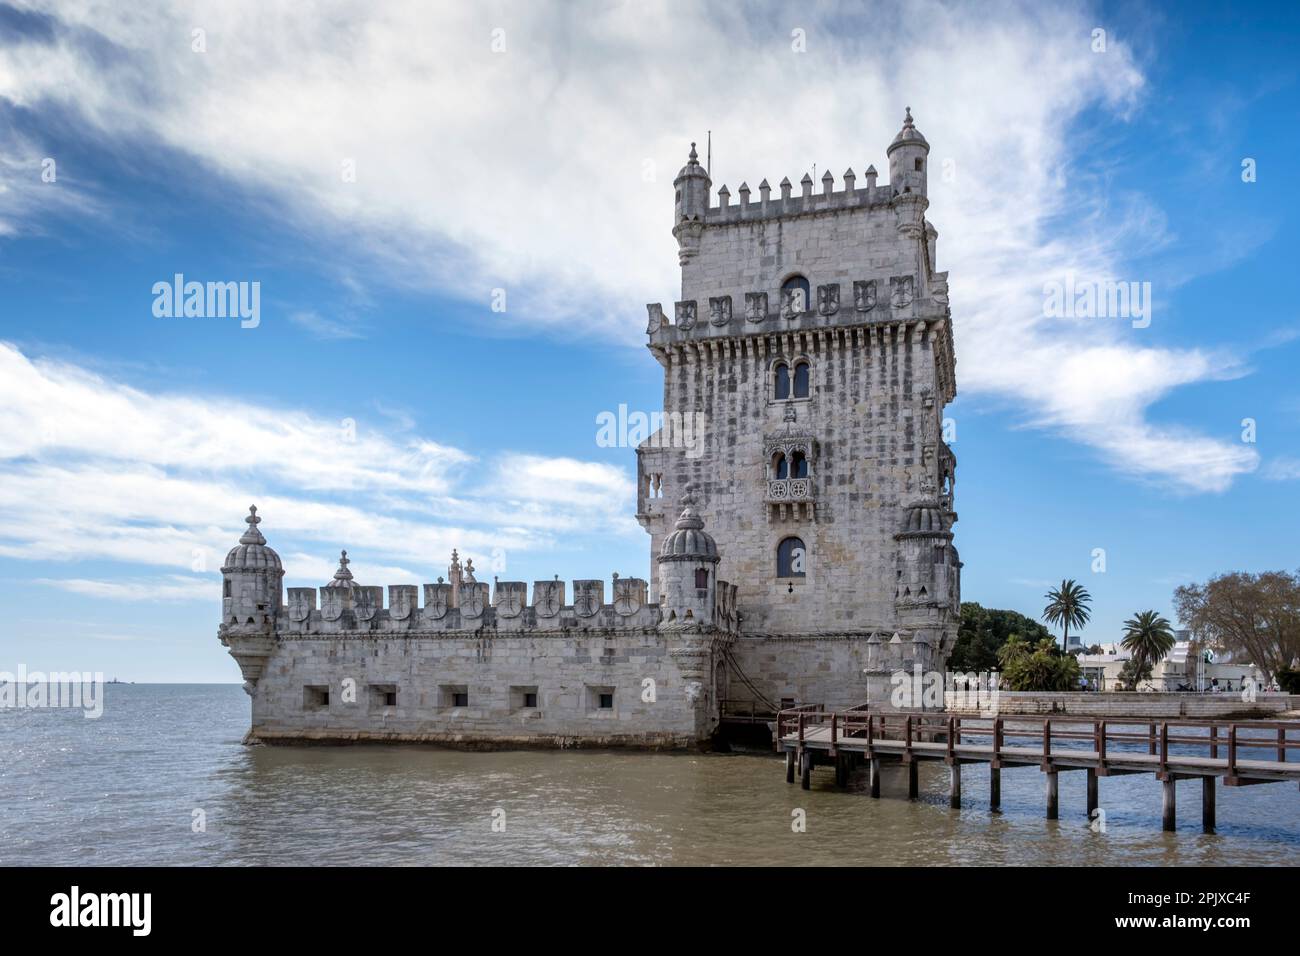 La tour Belem (Torre de Belem) près de la rive du Tage, Belem, Lisbonne, Portugal Banque D'Images